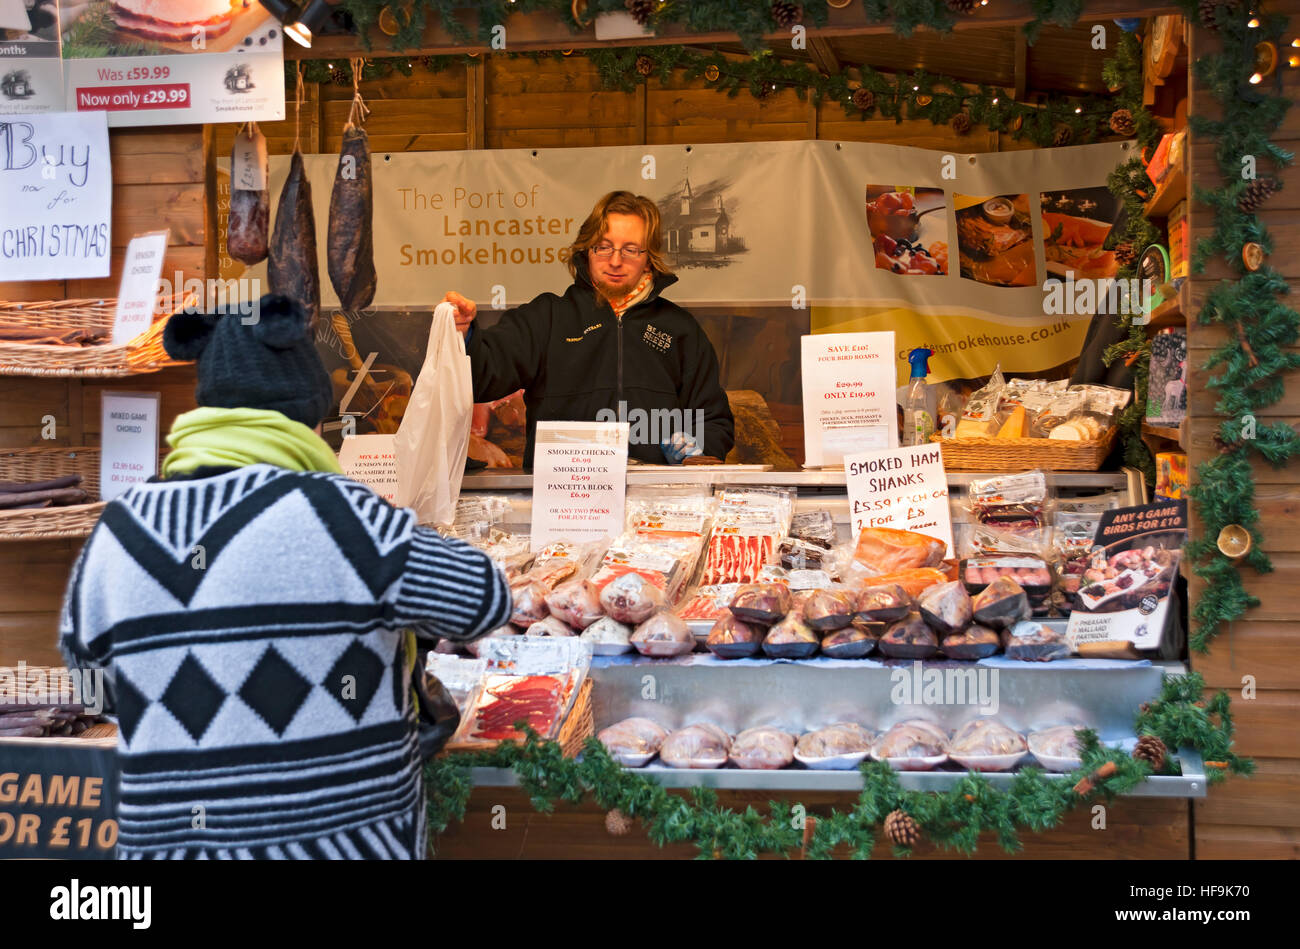 Acheteur achetant de la viande au marché de Noël Trader stall à St Nicholas Fayre en hiver York North Yorkshire Angleterre Royaume-Uni Royaume GB Grande-Bretagne Banque D'Images